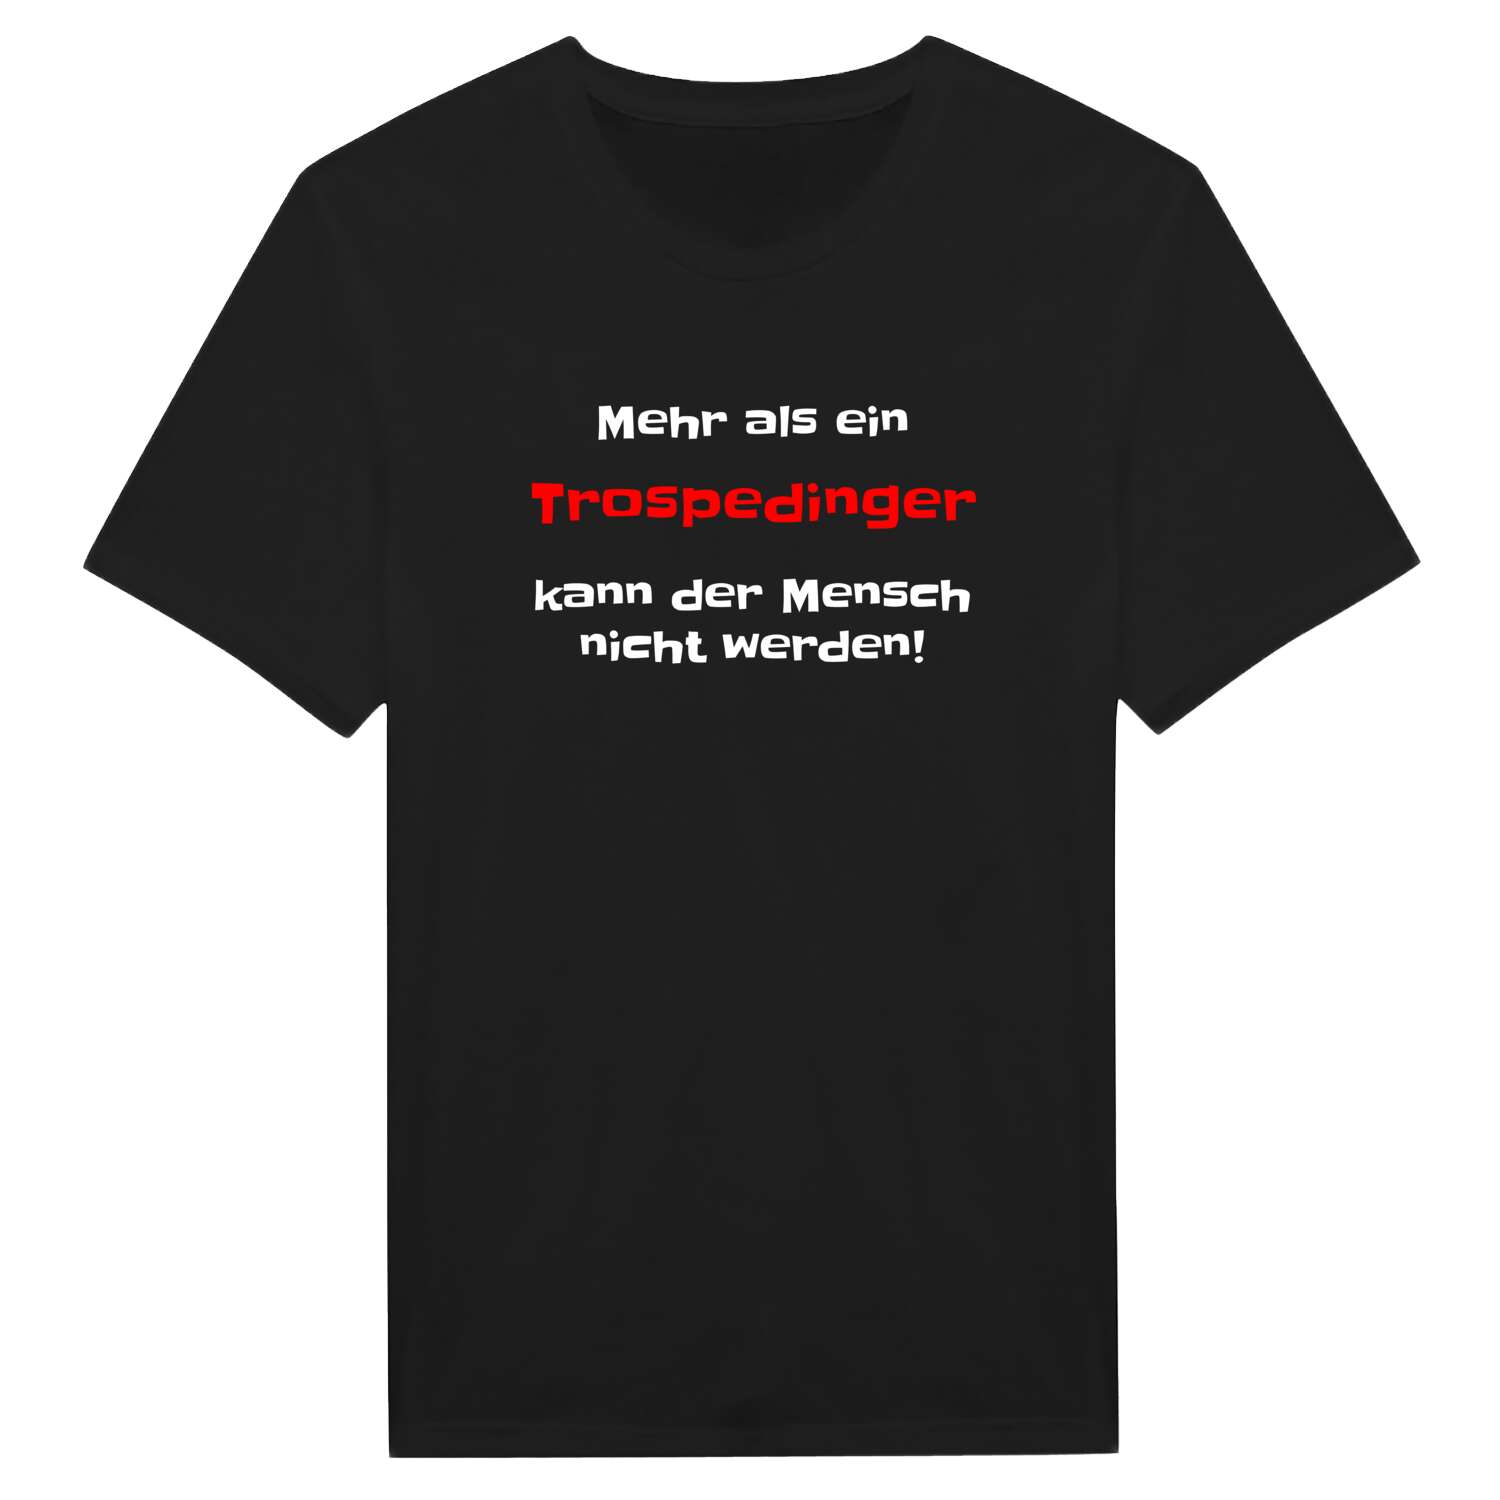 Trospeding T-Shirt »Mehr als ein«